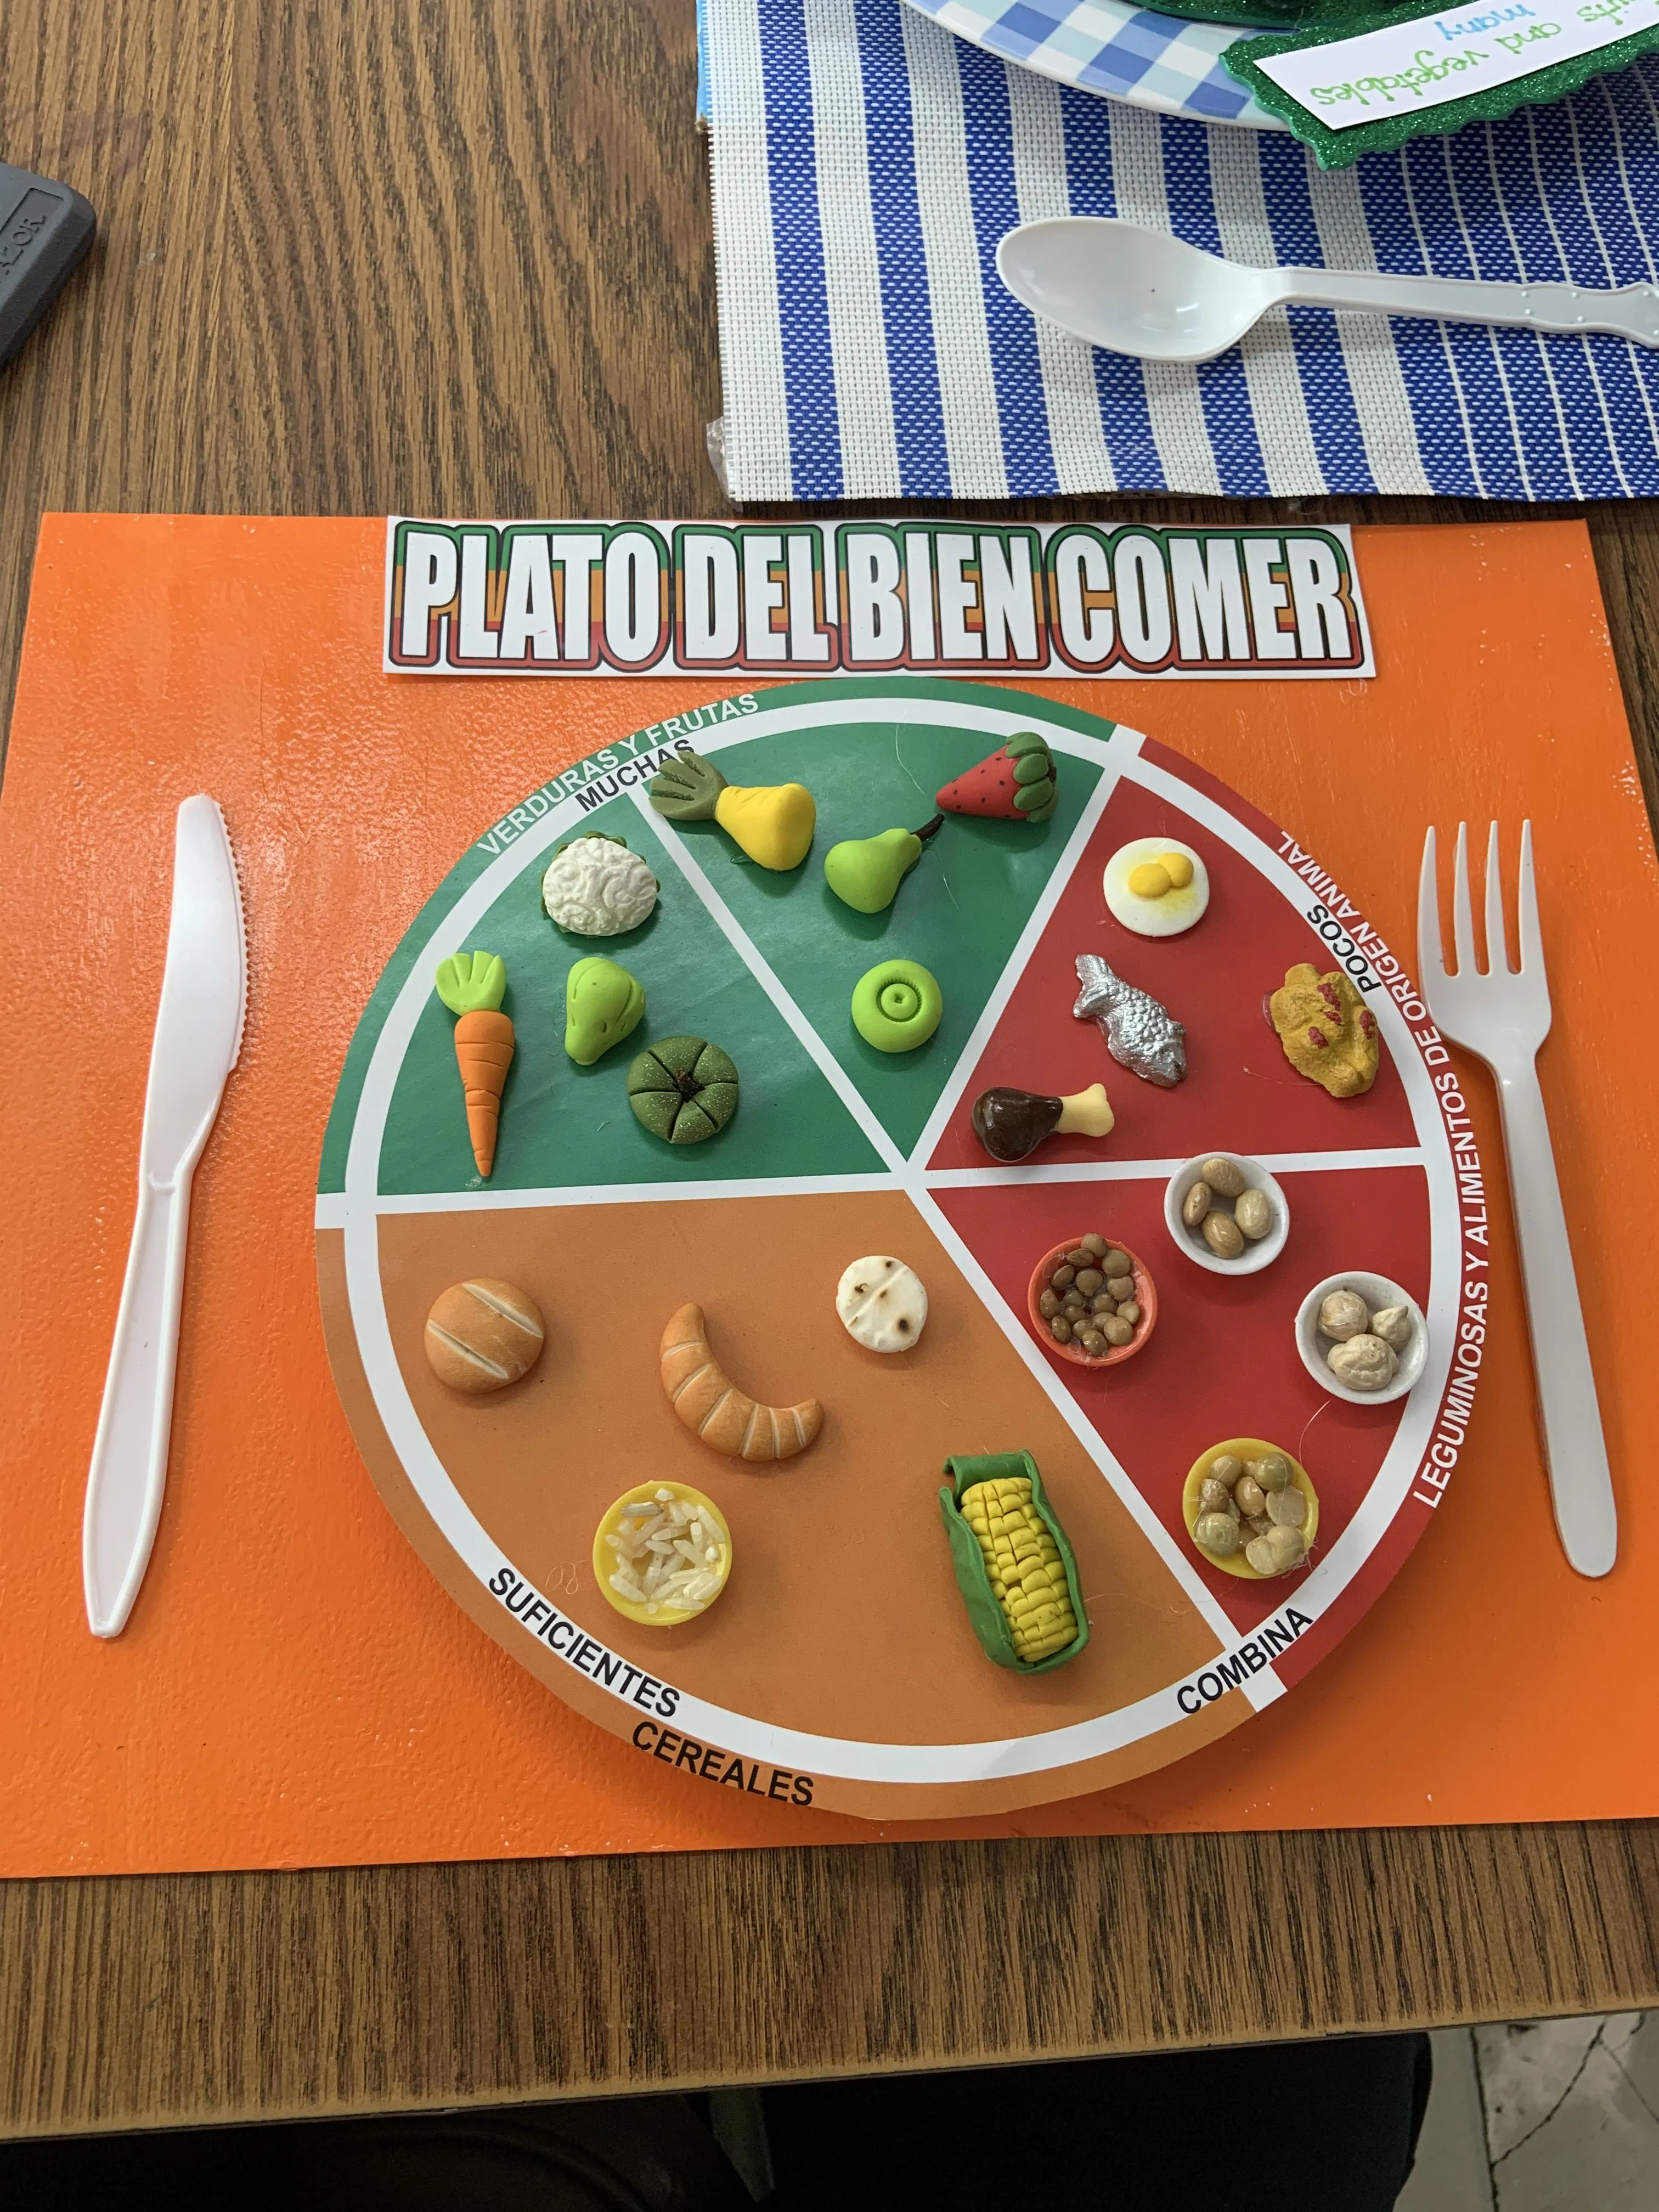 Plato del bien comer | Plato del bien comer, Plato del buen comer, Plato  del buen comer didactico